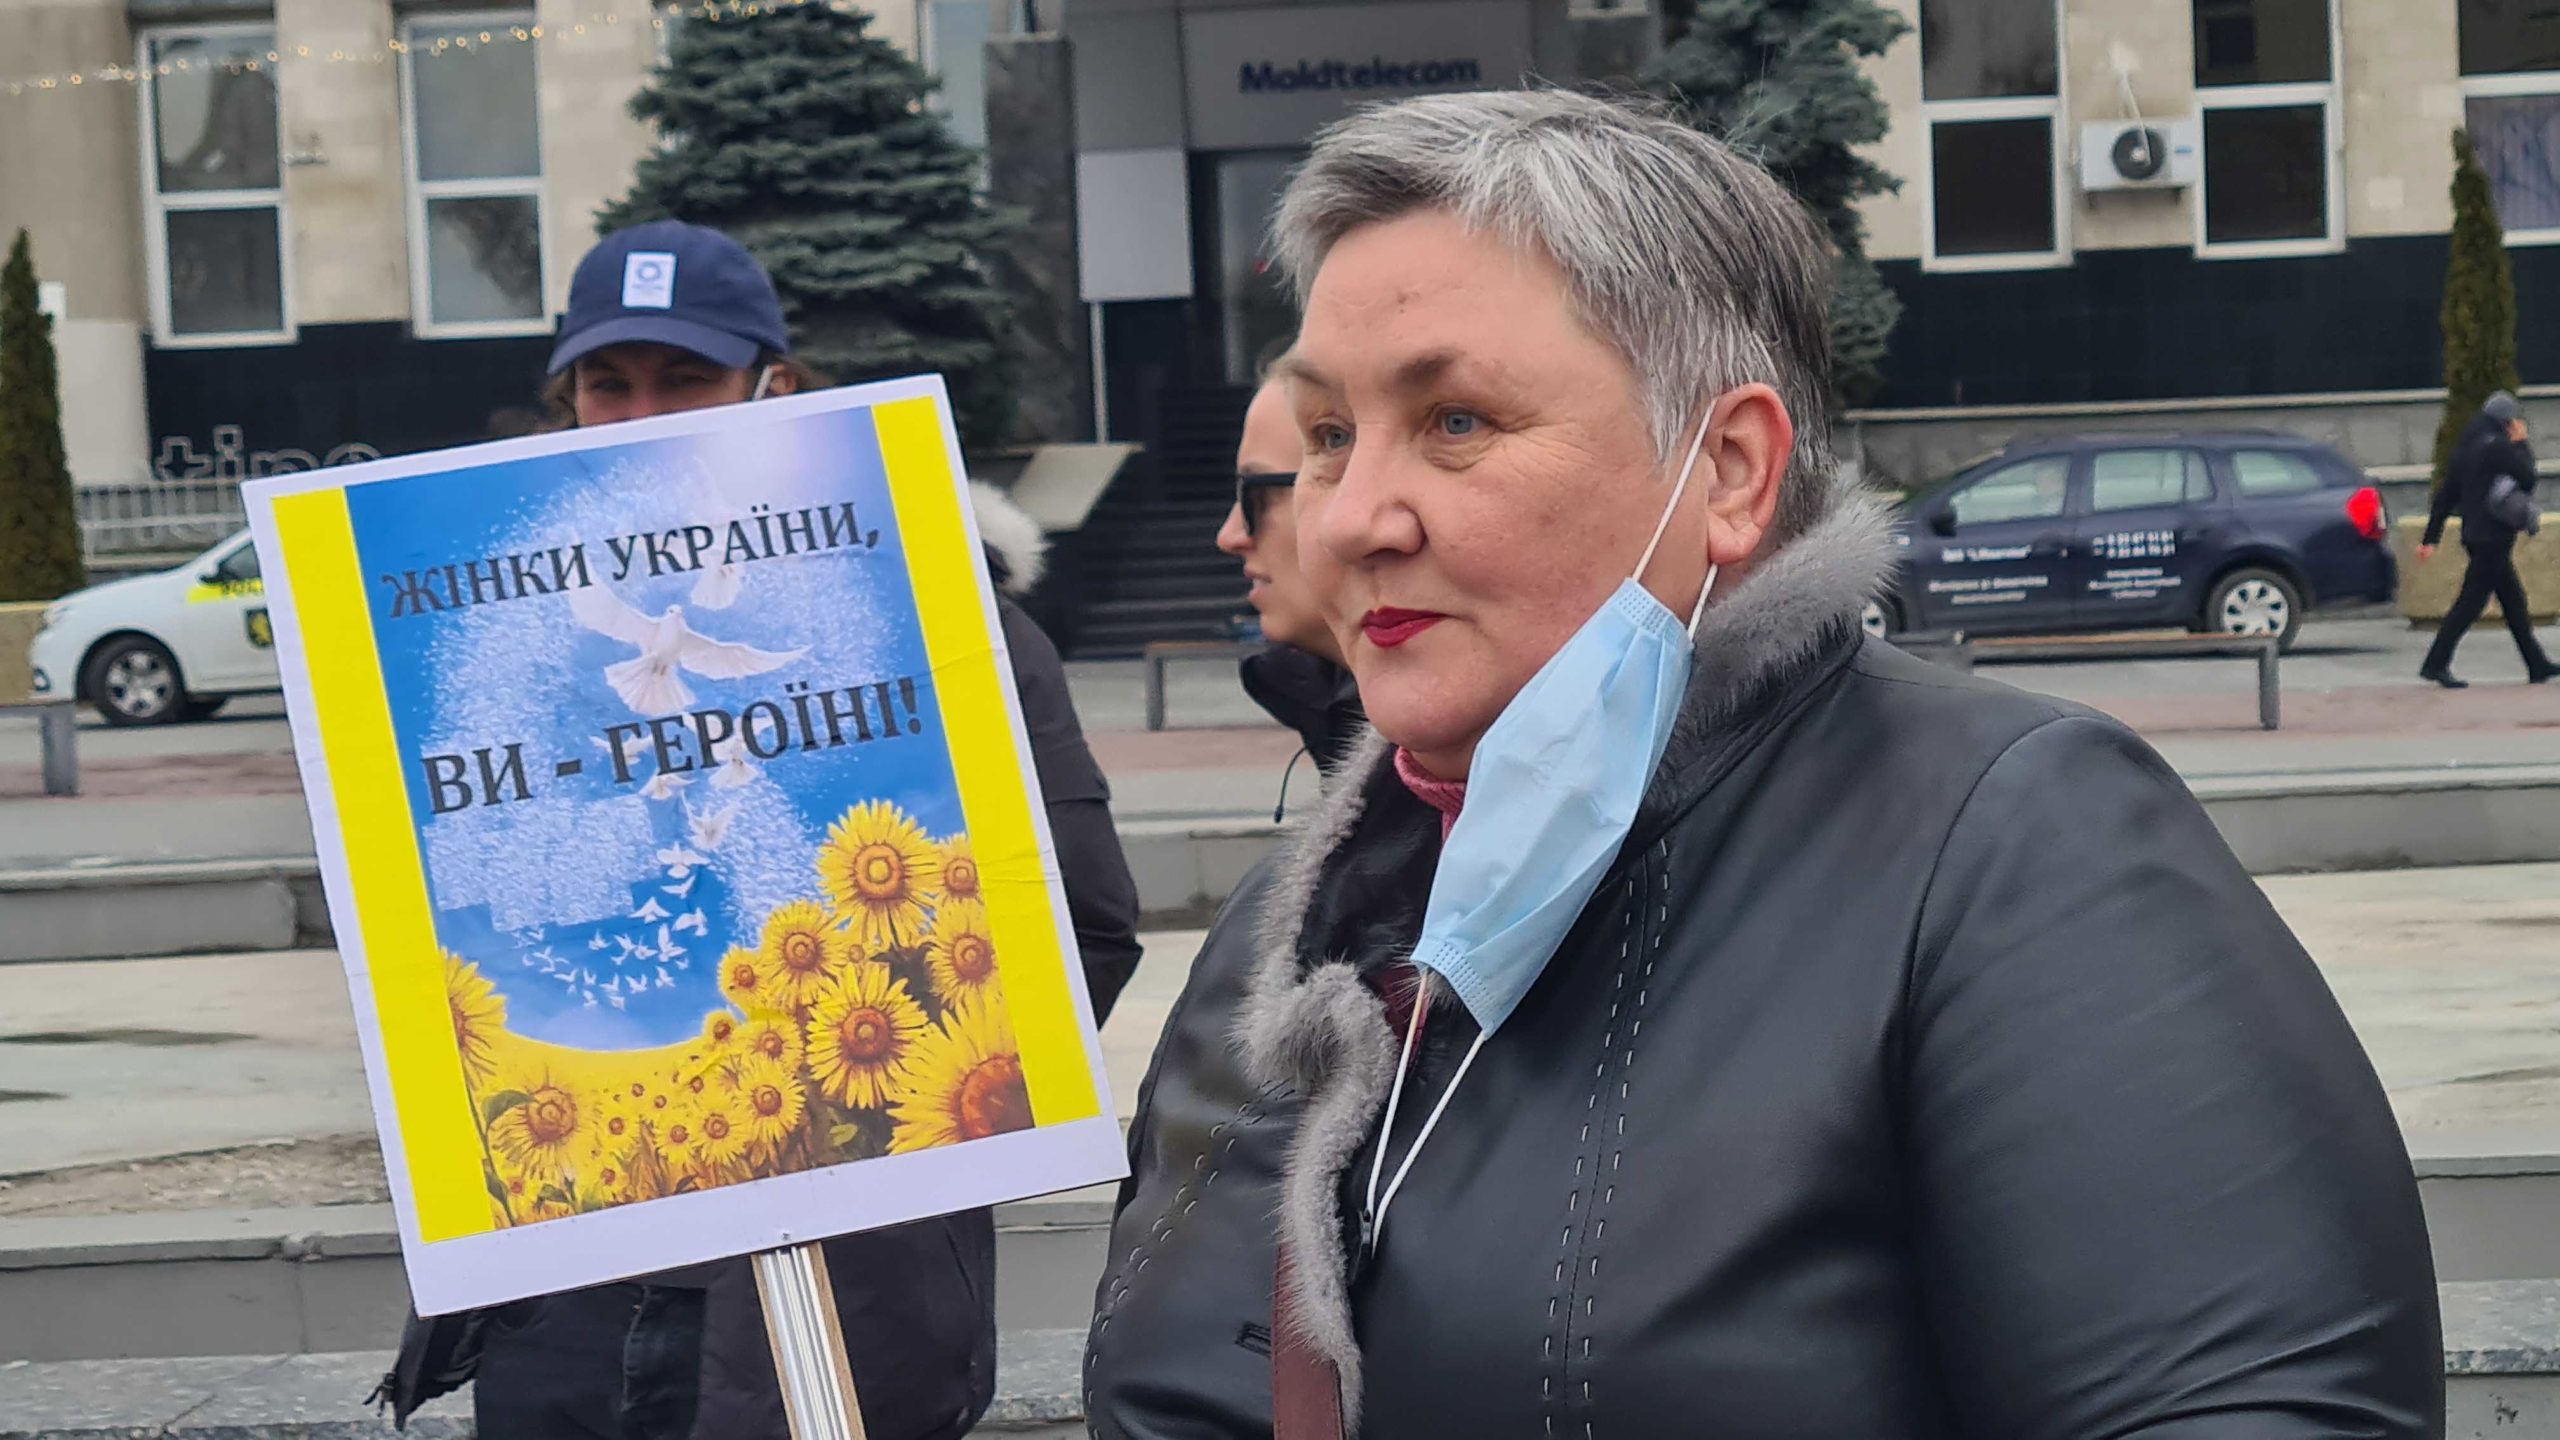 Тринадцатый день войны в Украине. Онлайн